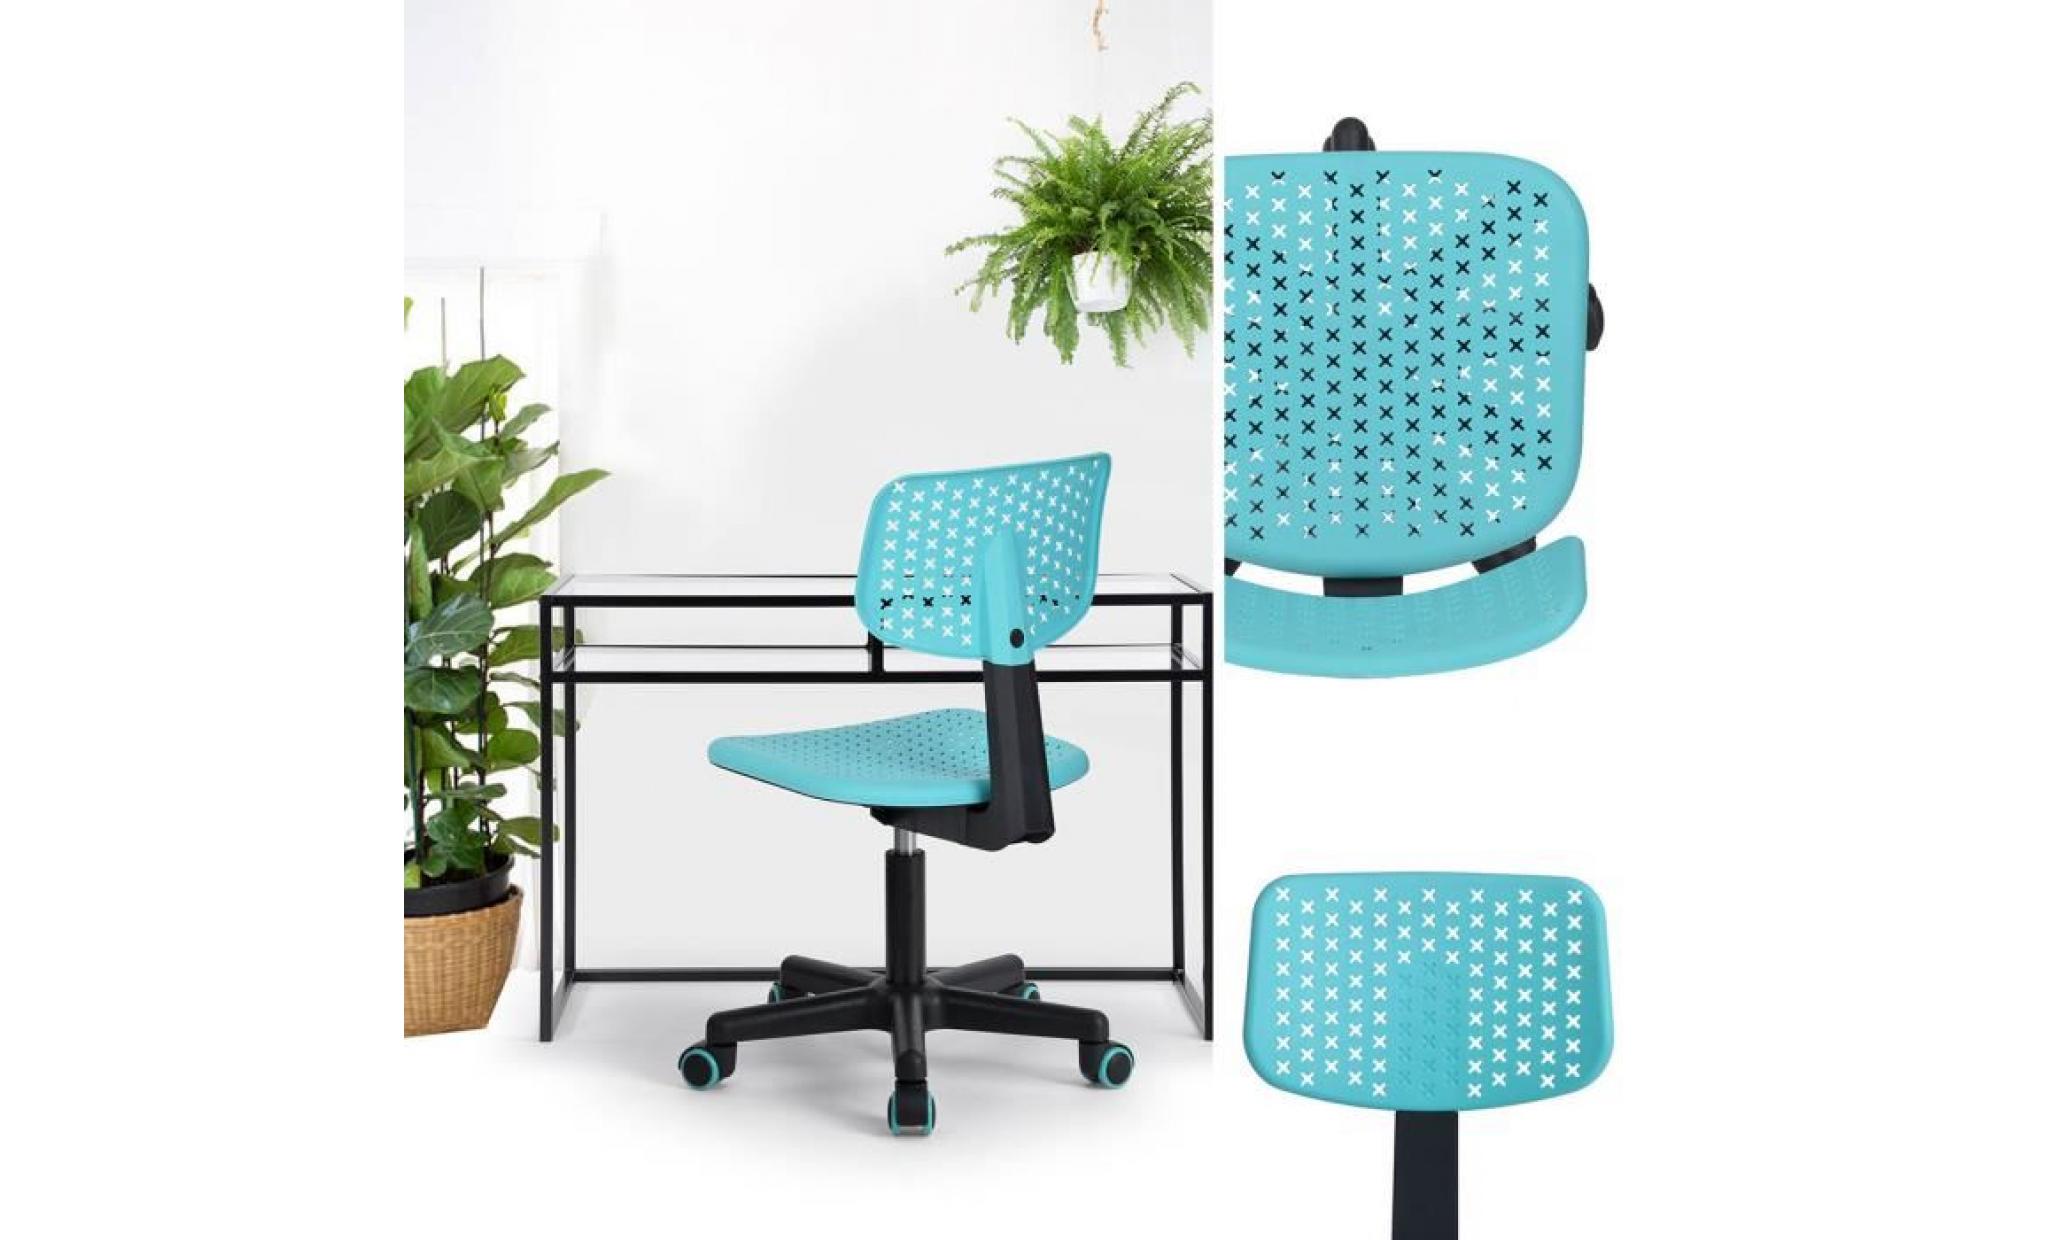 v.l.v chaise de bureau pour enfant plastique turquoise ajustable avec roulettes